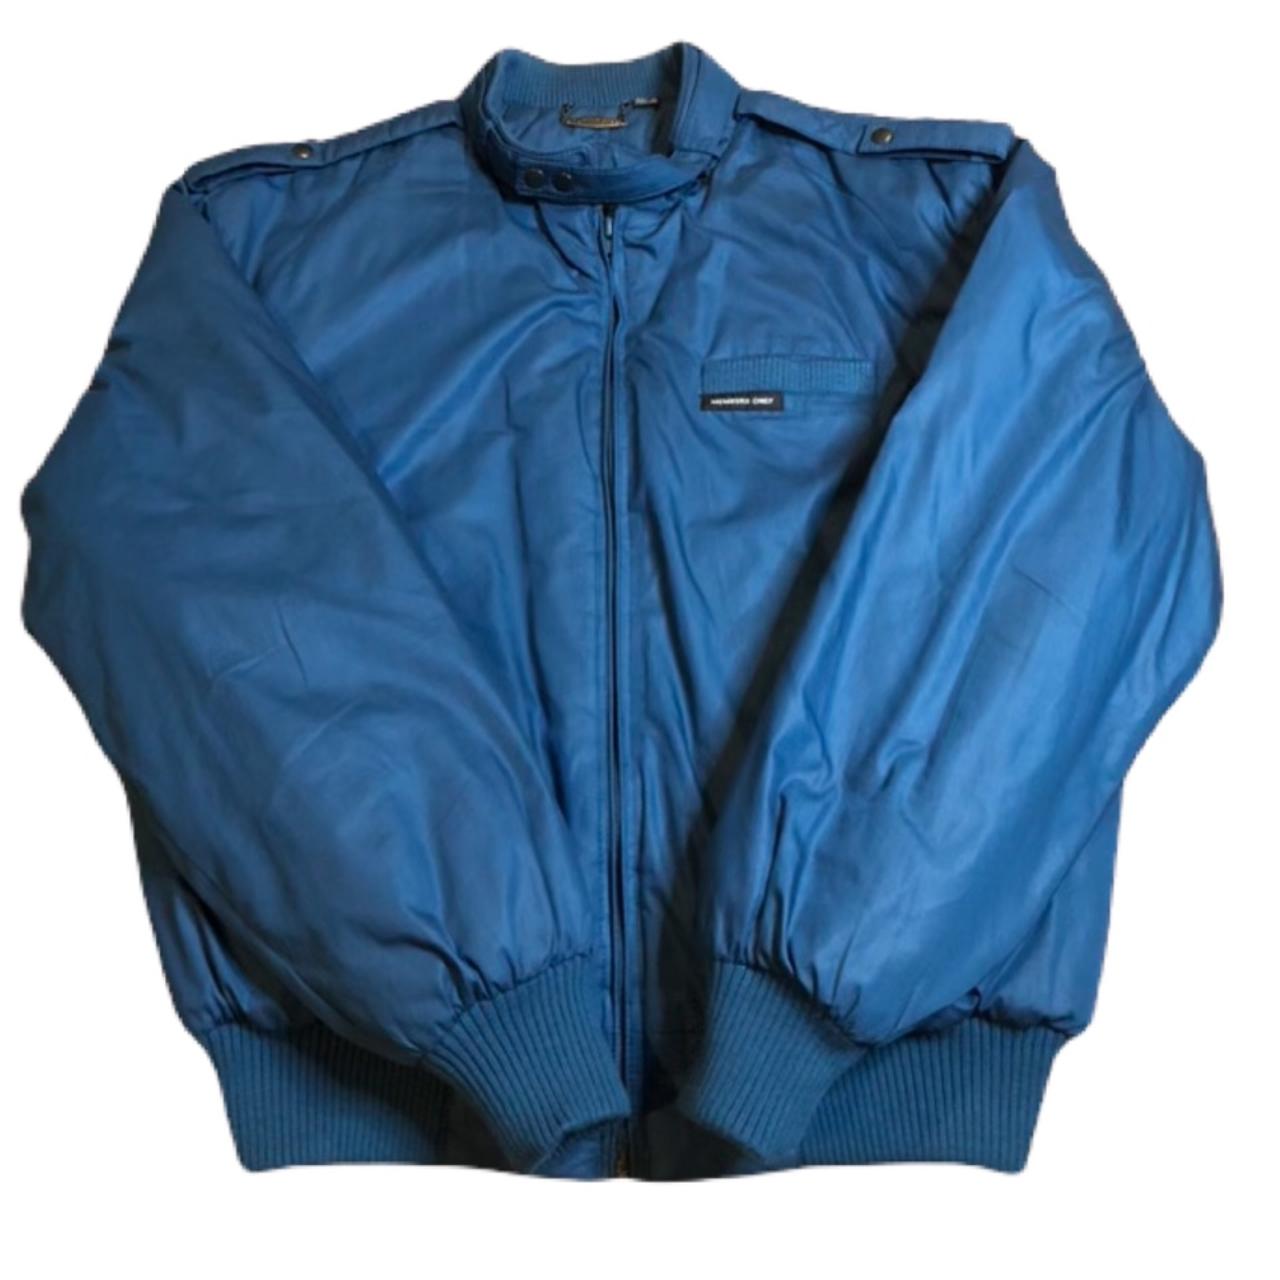 Vintage 80s Members Only OG blue jacket In great - Depop